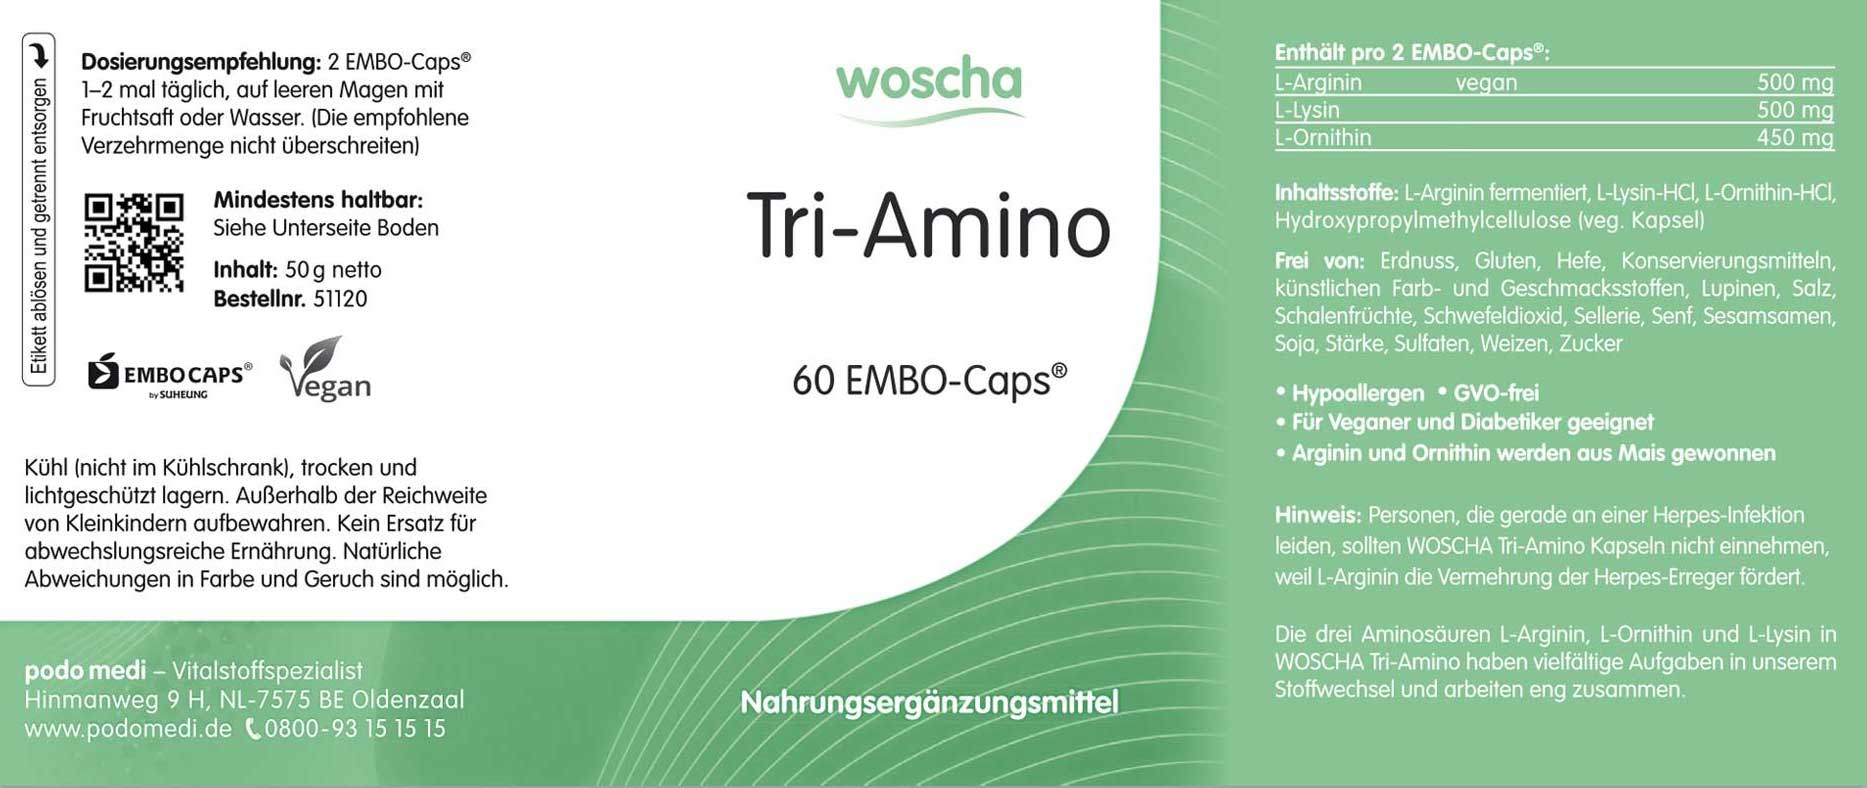 Woscha Tri-Amino von podo medi beinhaltet 60 Kapseln Etikett